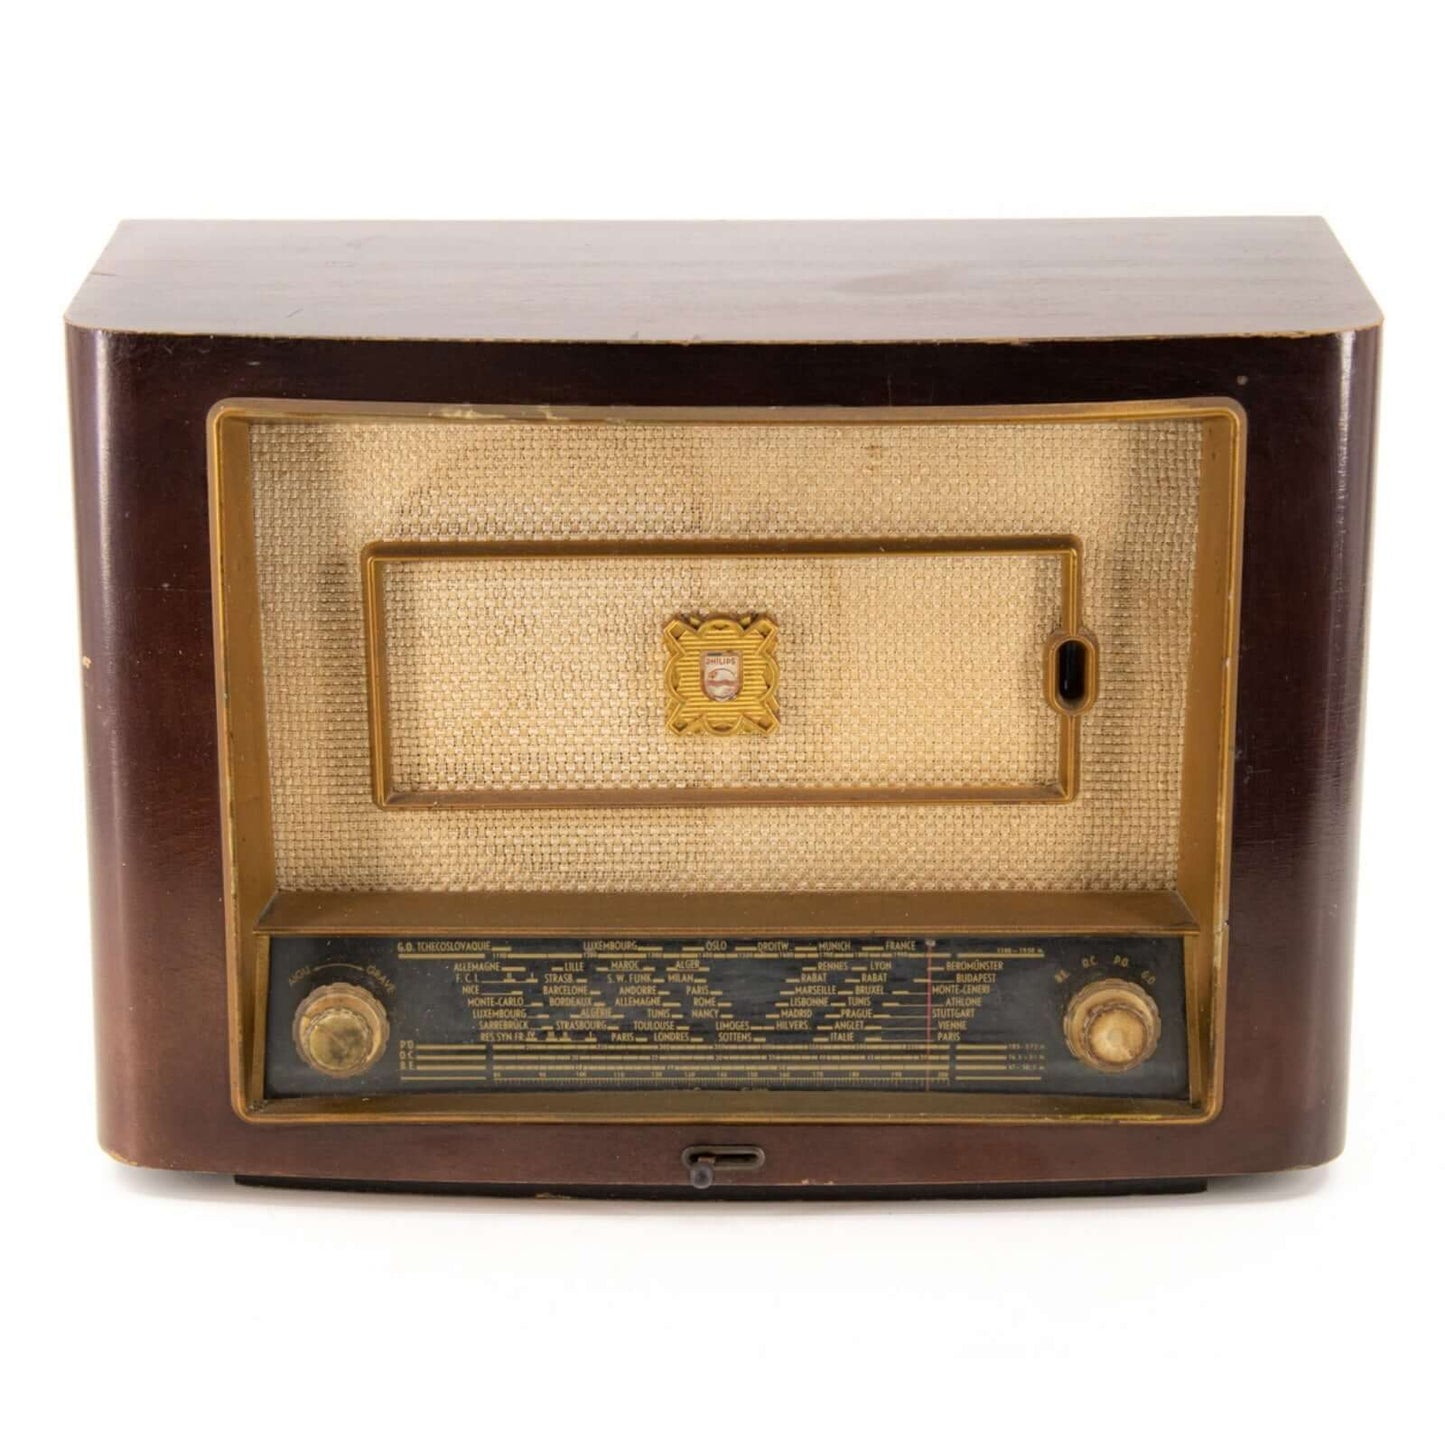 Radio Bluetooth Philips Vintage 50's enceinte connectée française haut de gamme absolument prodige radio vintage